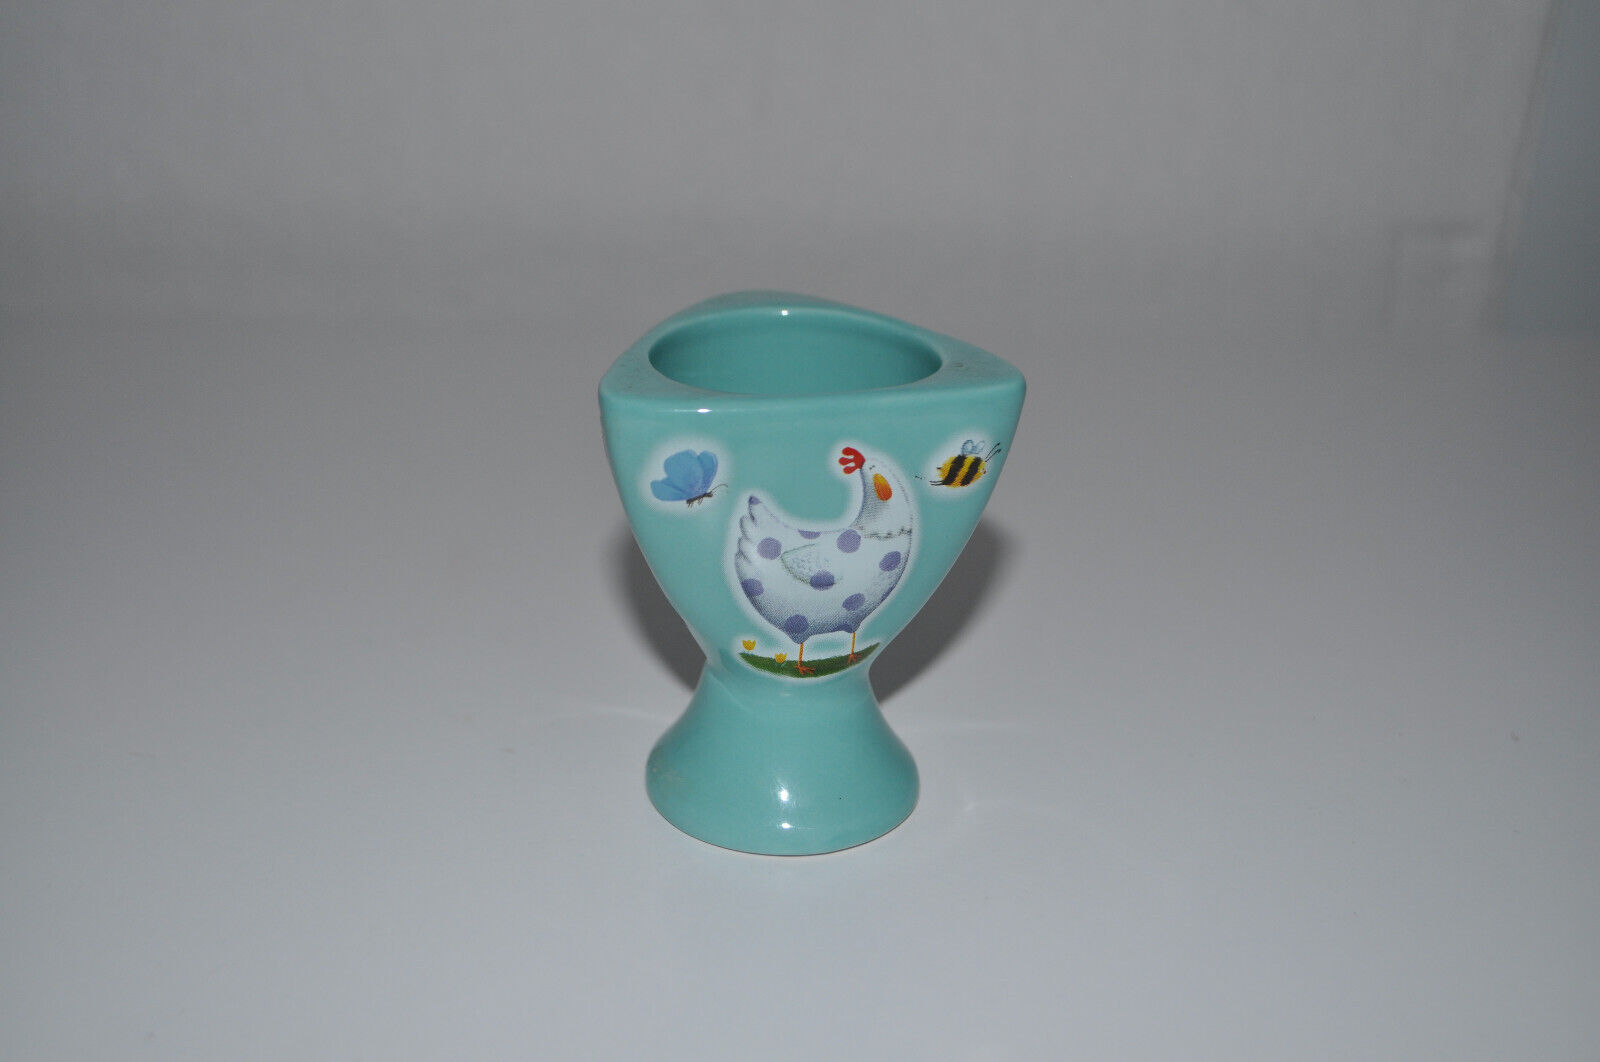 Rob Scotton EASTER PARADE Ceramic Egg Cup Triangular